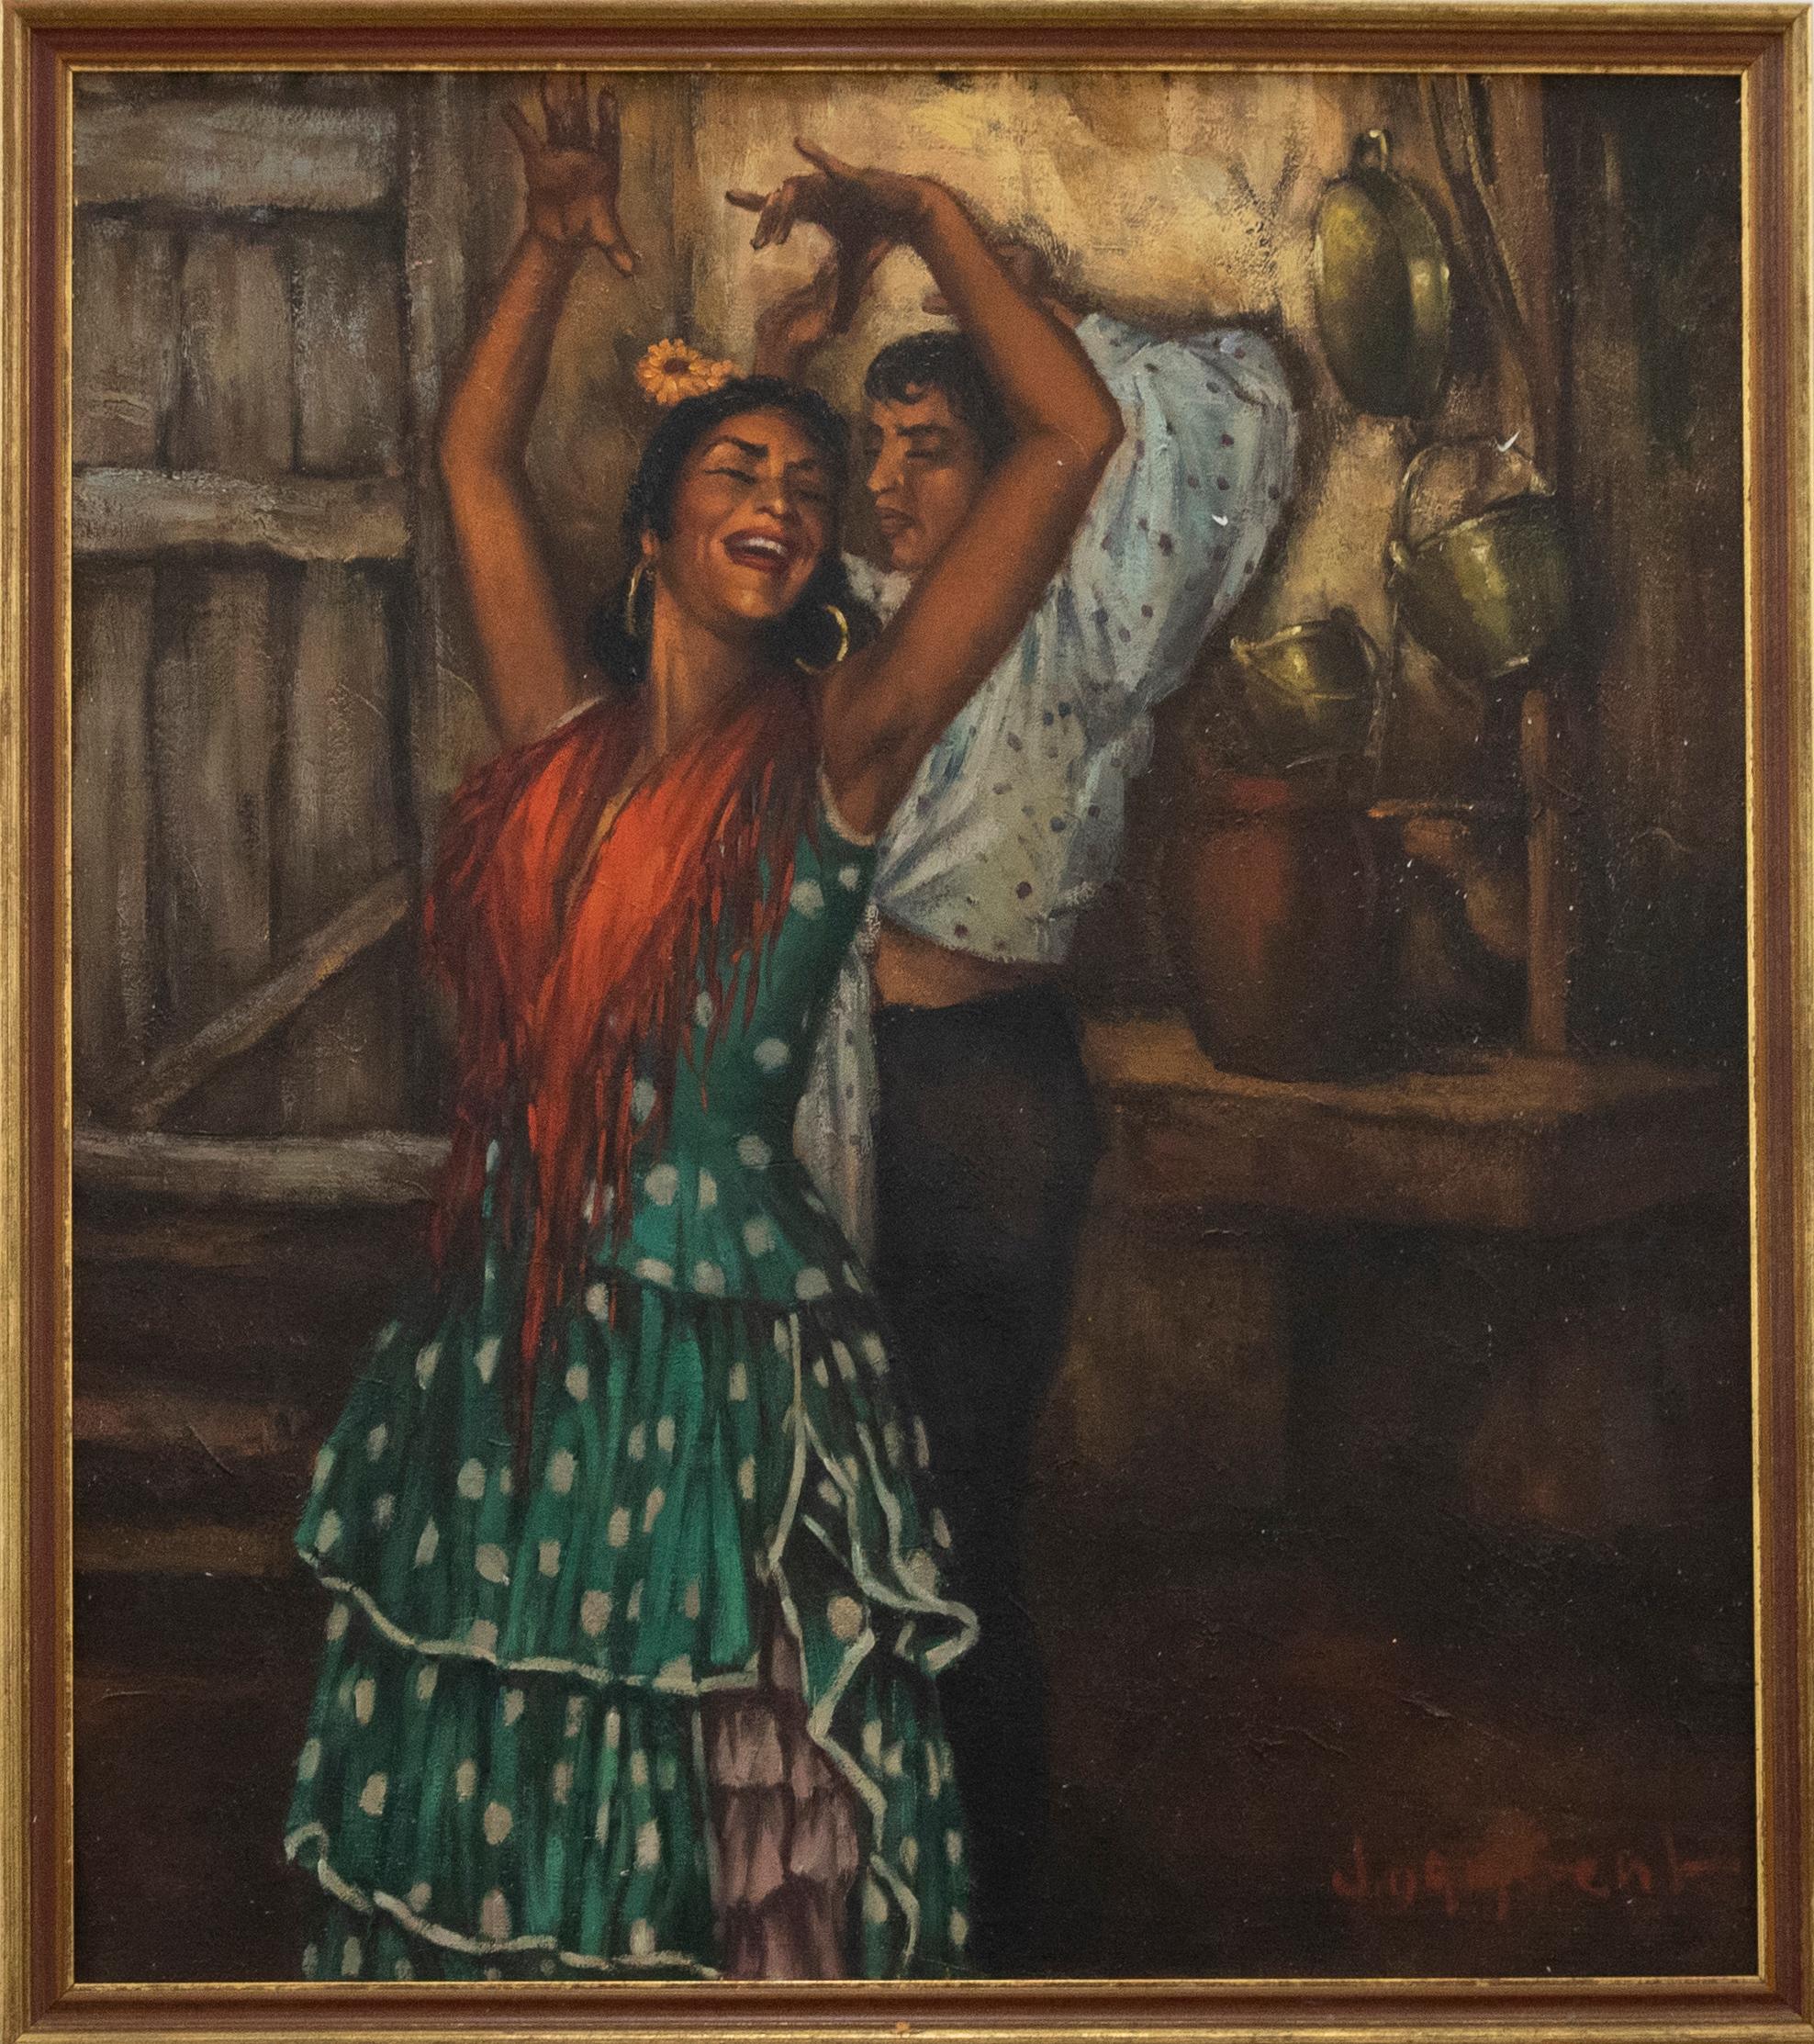 Scène saisissante représentant deux danseuses espagnoles jouant du flamenco. Le couple affiche une expression joyeuse en dansant, vêtu de vêtements traditionnels colorés. Signé en bas à droite. Inscrit au verso : ''La Pepa' Cueva Gitano Granada'